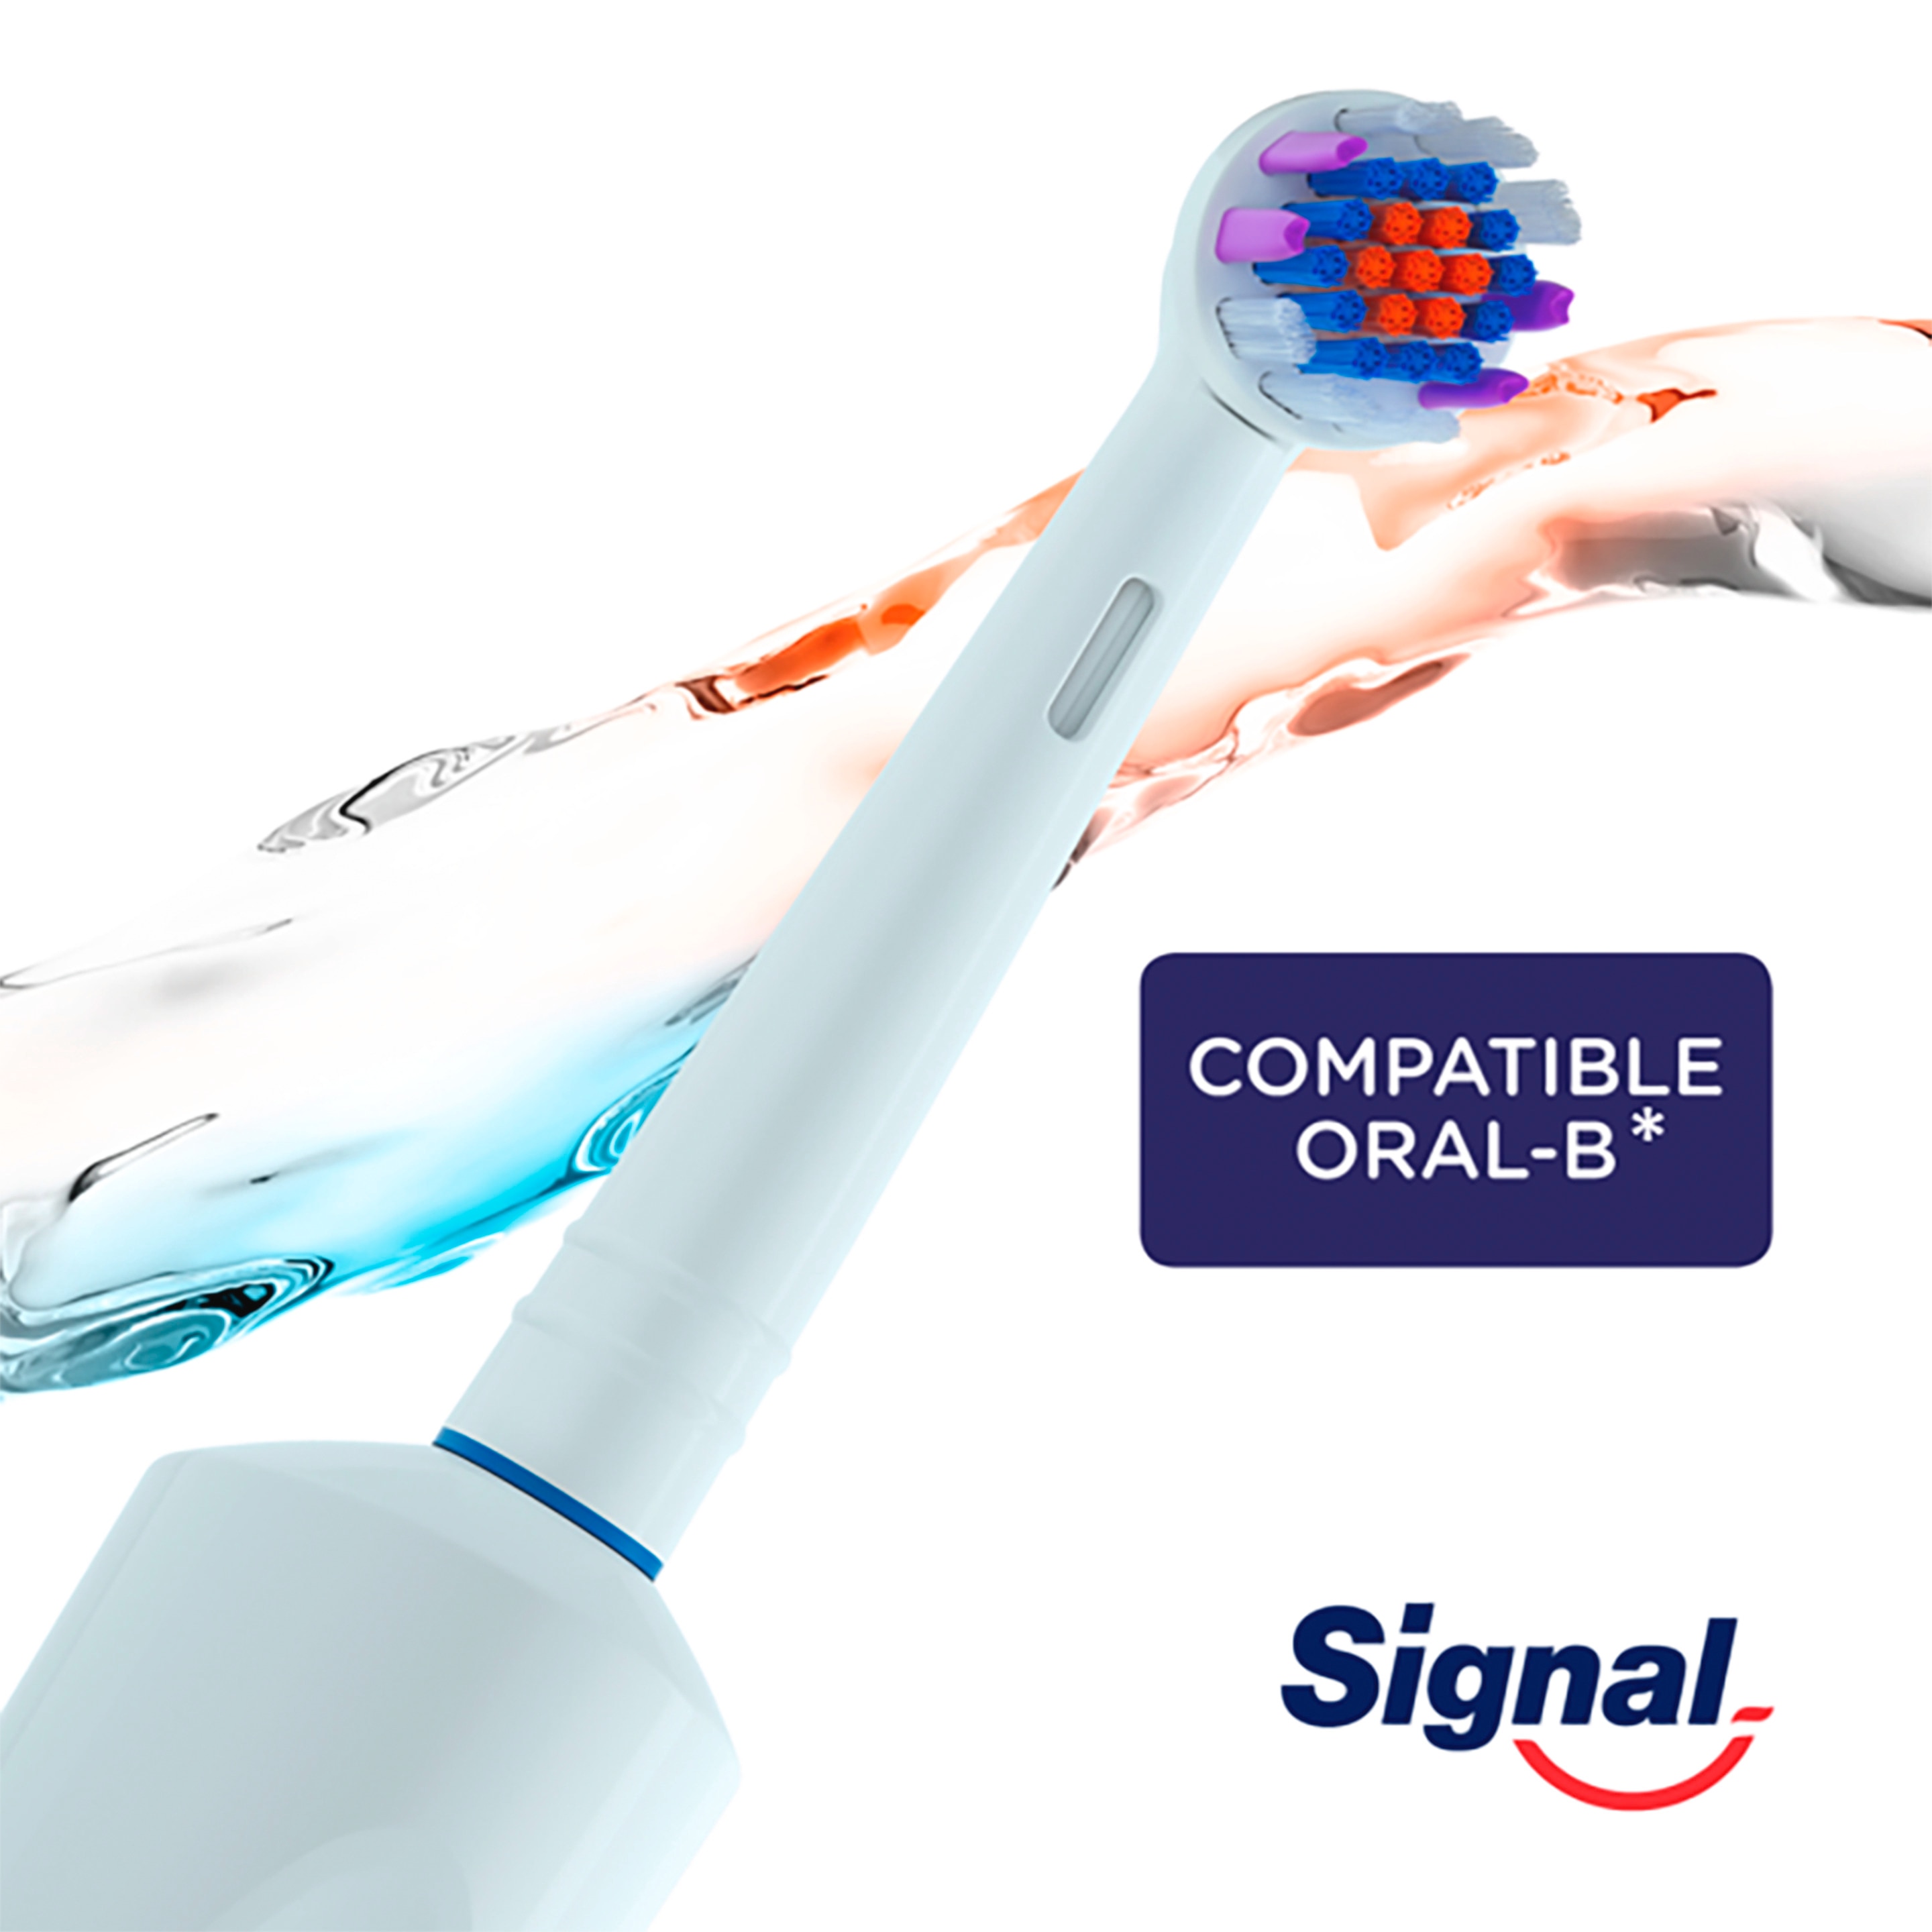 Brossettes Electriques compatible oral B | Signal